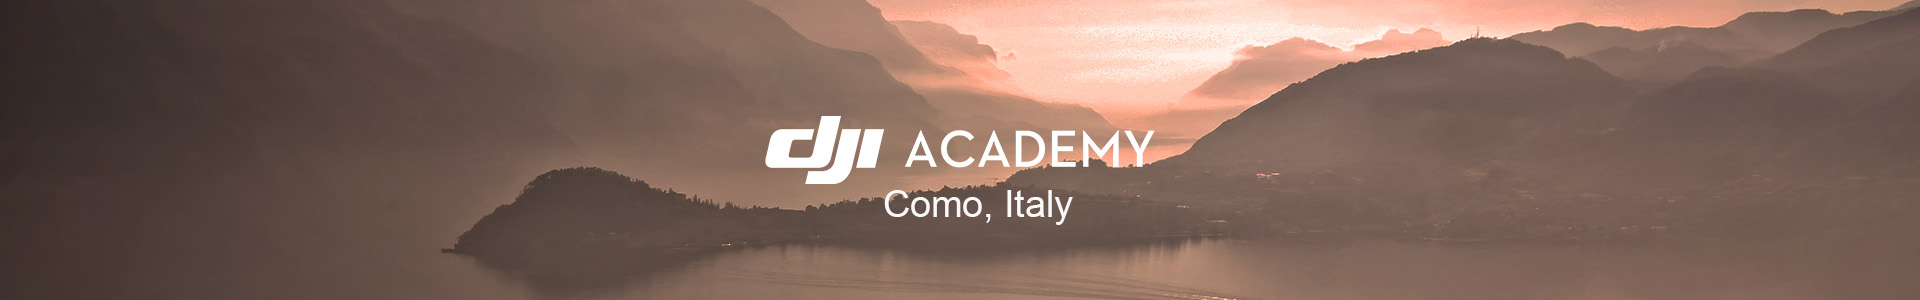 DJI Academy Como Banner